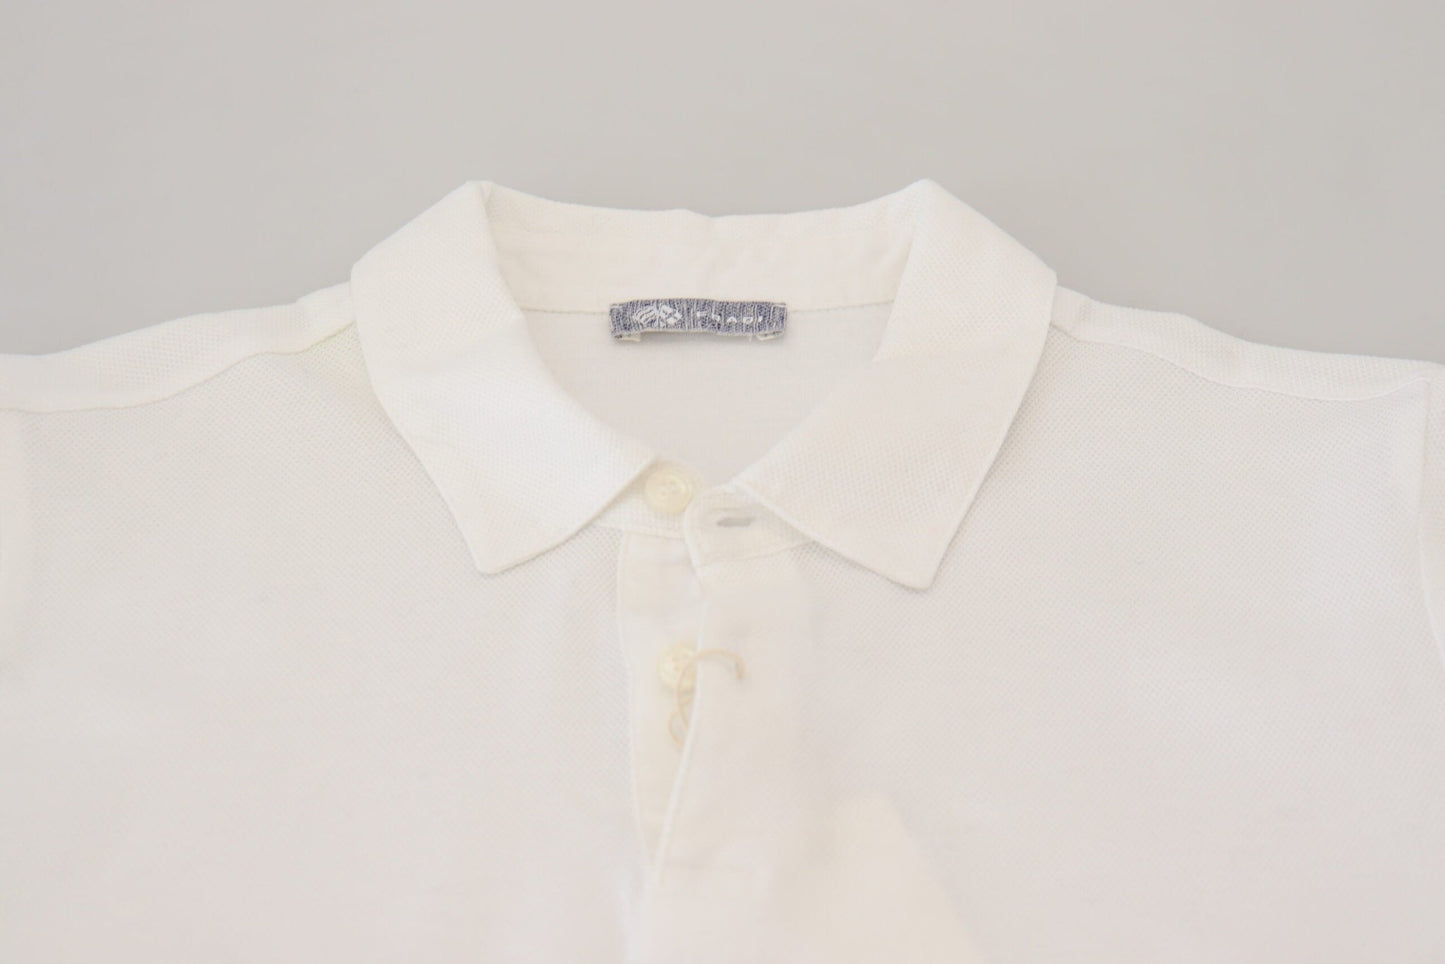 FRADI Elegant White Cotton Polo T-Shirt